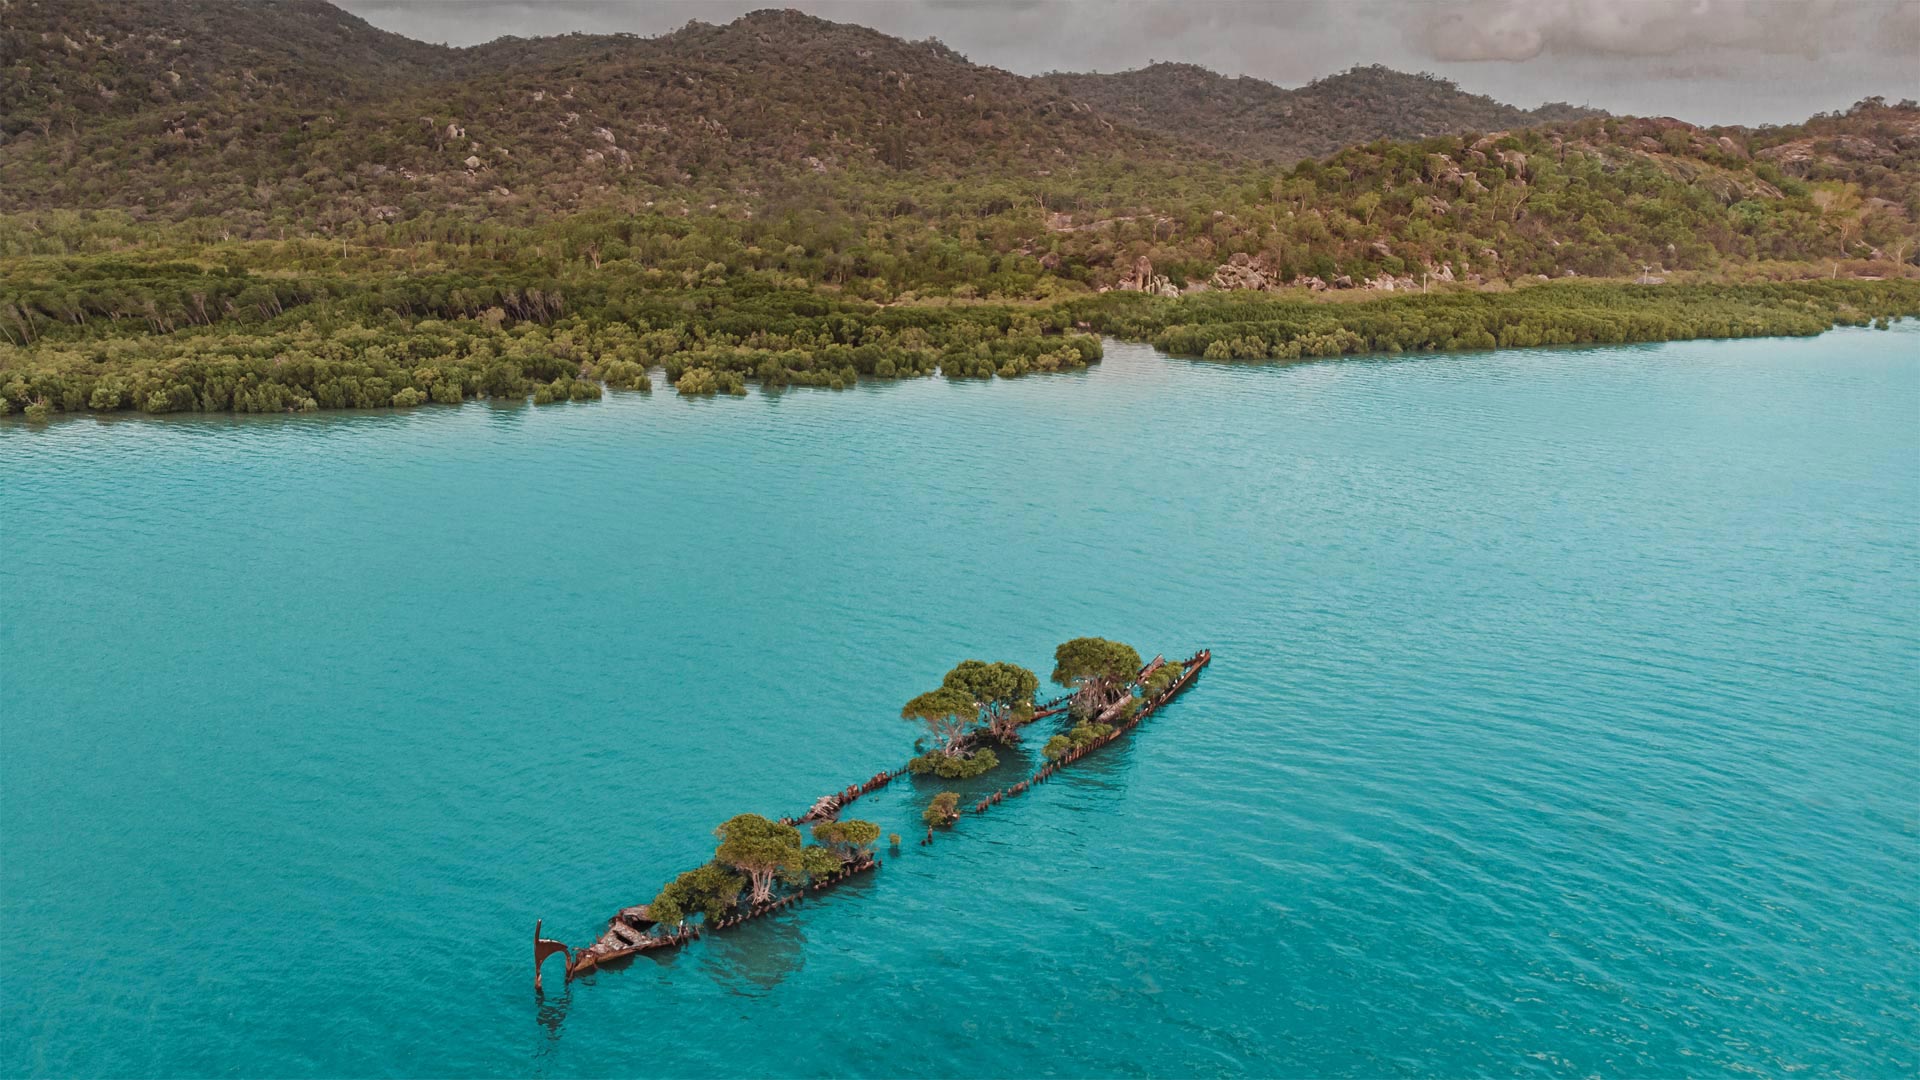 航拍生长着树木的遇难船“阿德莱德市”残骸，澳大利亚磁岛 